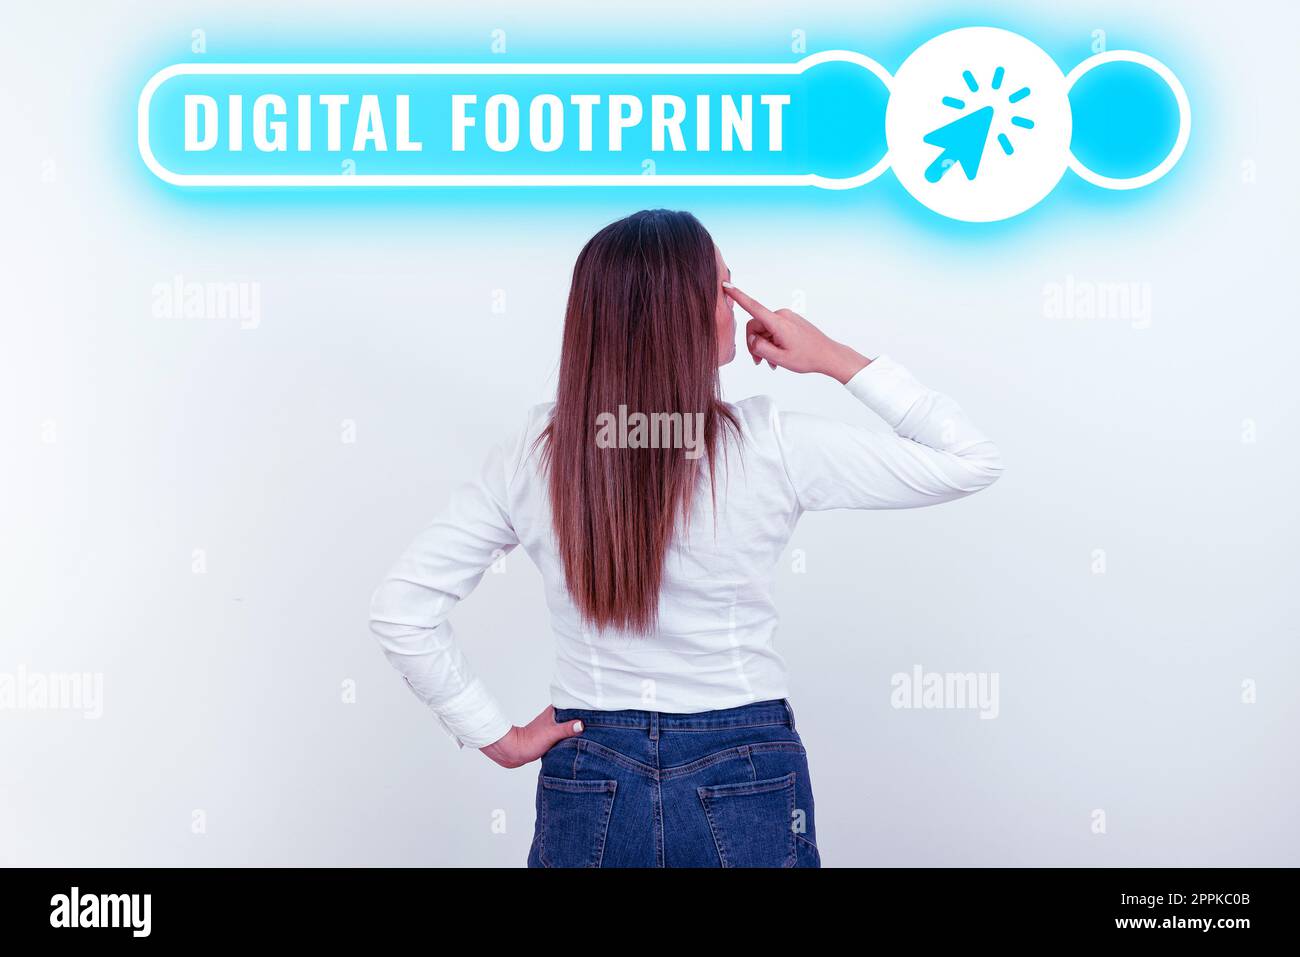 Simbolo di testo che mostra il footprint digitale. Word for utilizza la tecnologia digitale per gestire il processo di produzione Foto Stock